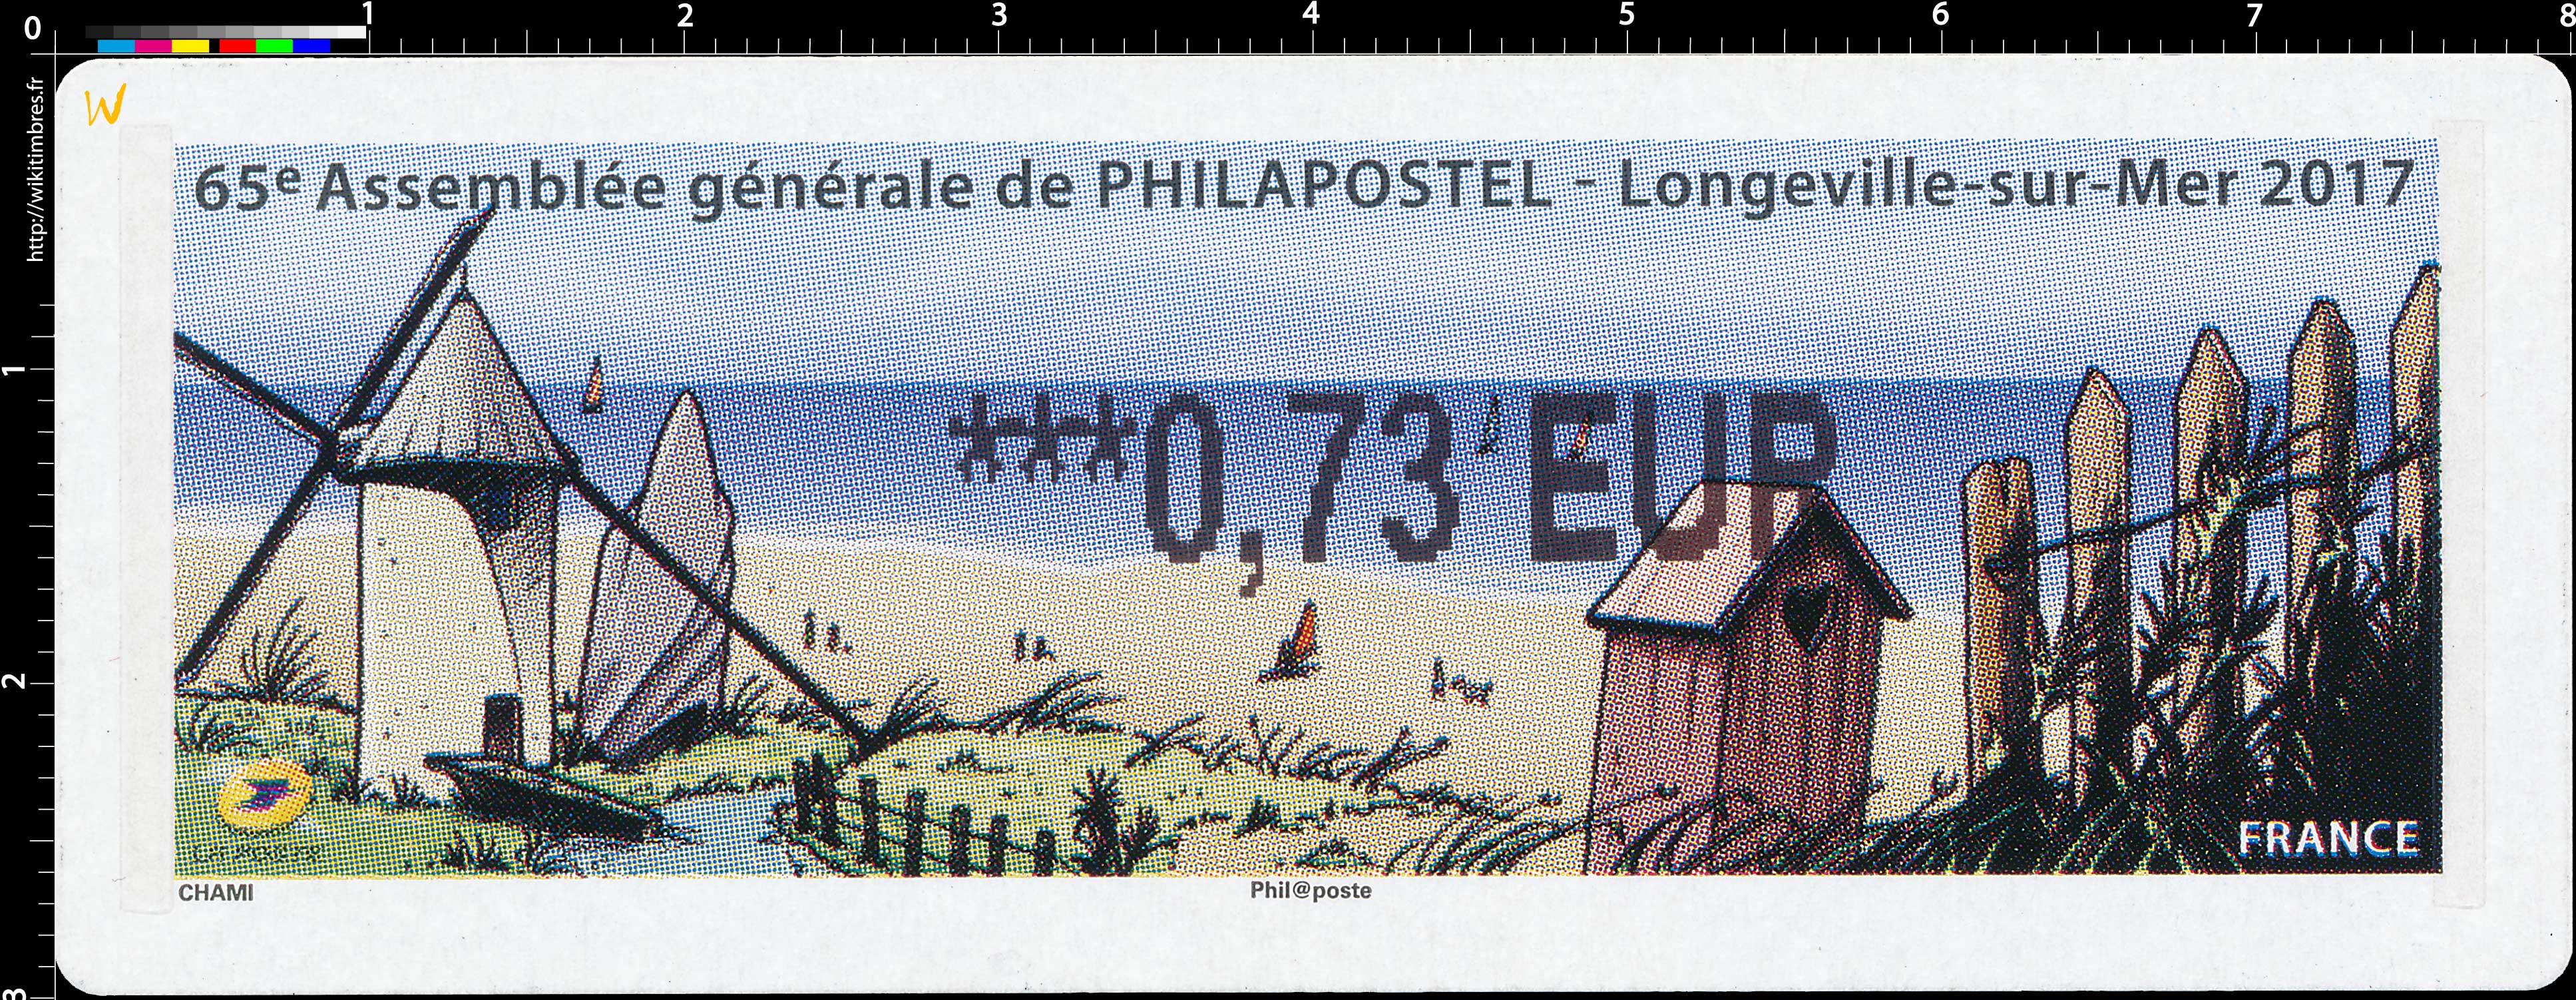 2017 65e Assemblée générale de PHILAPOSTEL - Longueville-sur-mer